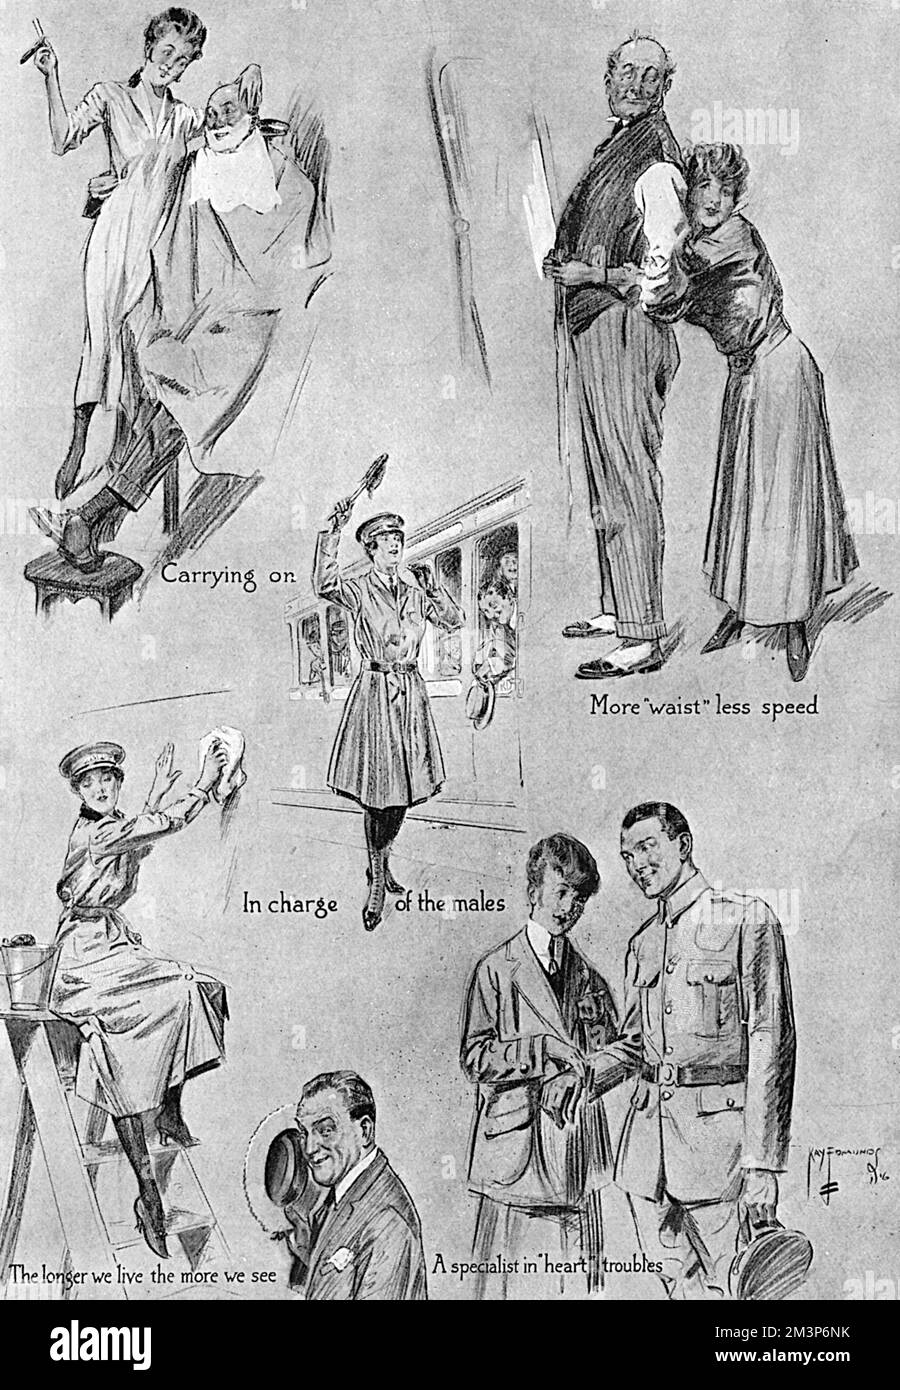 Eine Seite mit Skizzen von "Männerarbeit, die die Männer den Frauen wünschen", eine humorvolle (und leicht chauvinistische) Bemerkung zu den traditionell männlichen Jobs, die Frauen während des Ersten Weltkriegs angenommen haben. 1916 Stockfoto